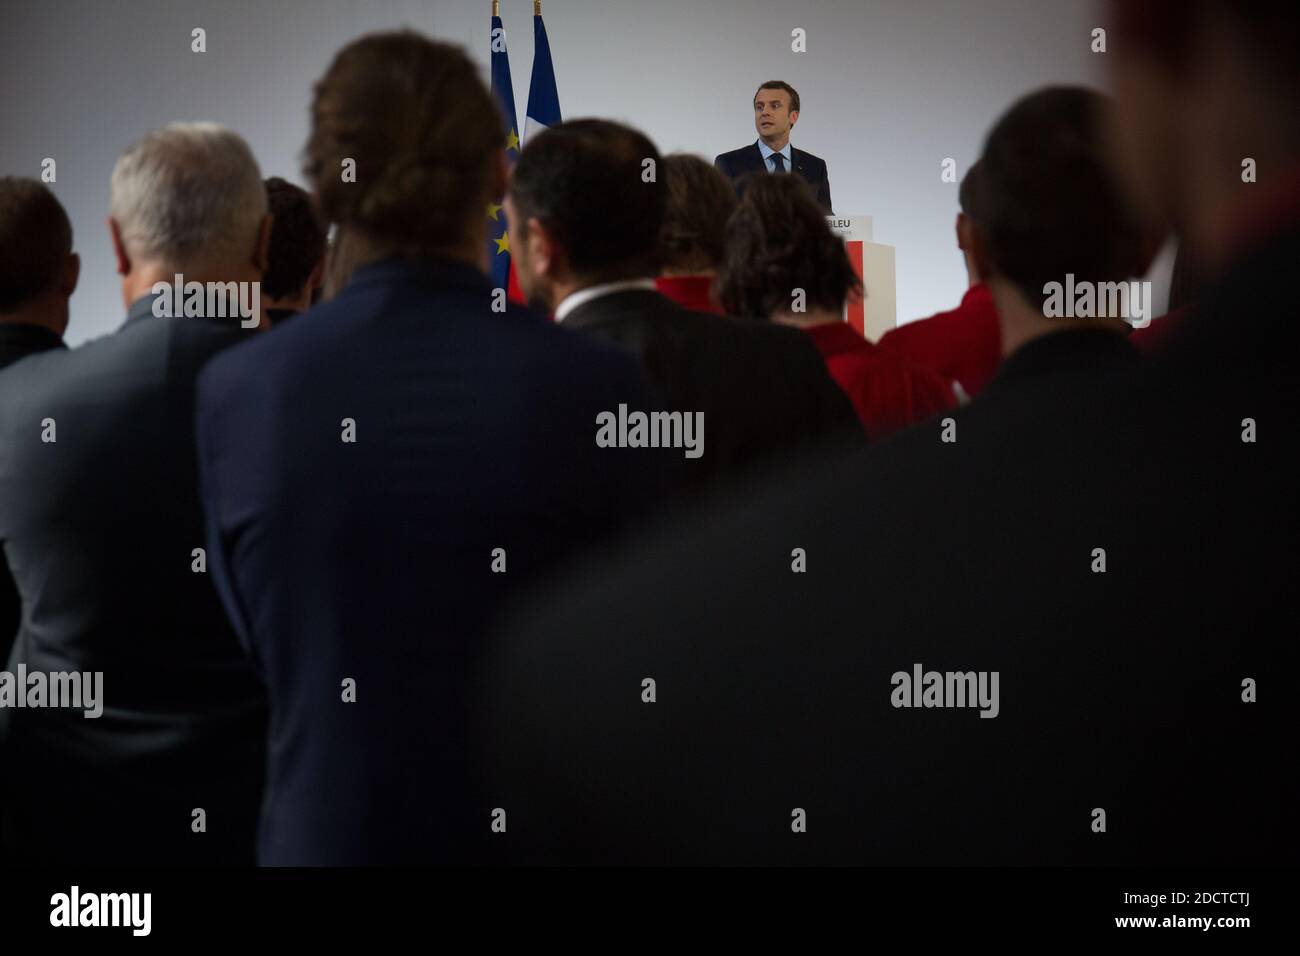 Le président français Emmanuel Macron reçoit lors d'une cérémonie de remise des prix réunissant les athlètes français qui ont participé aux Jeux olympiques d'hiver de 2018 à Pyeongchang. Photo de Hamilton/pool/ABACAPRESS.COM Banque D'Images